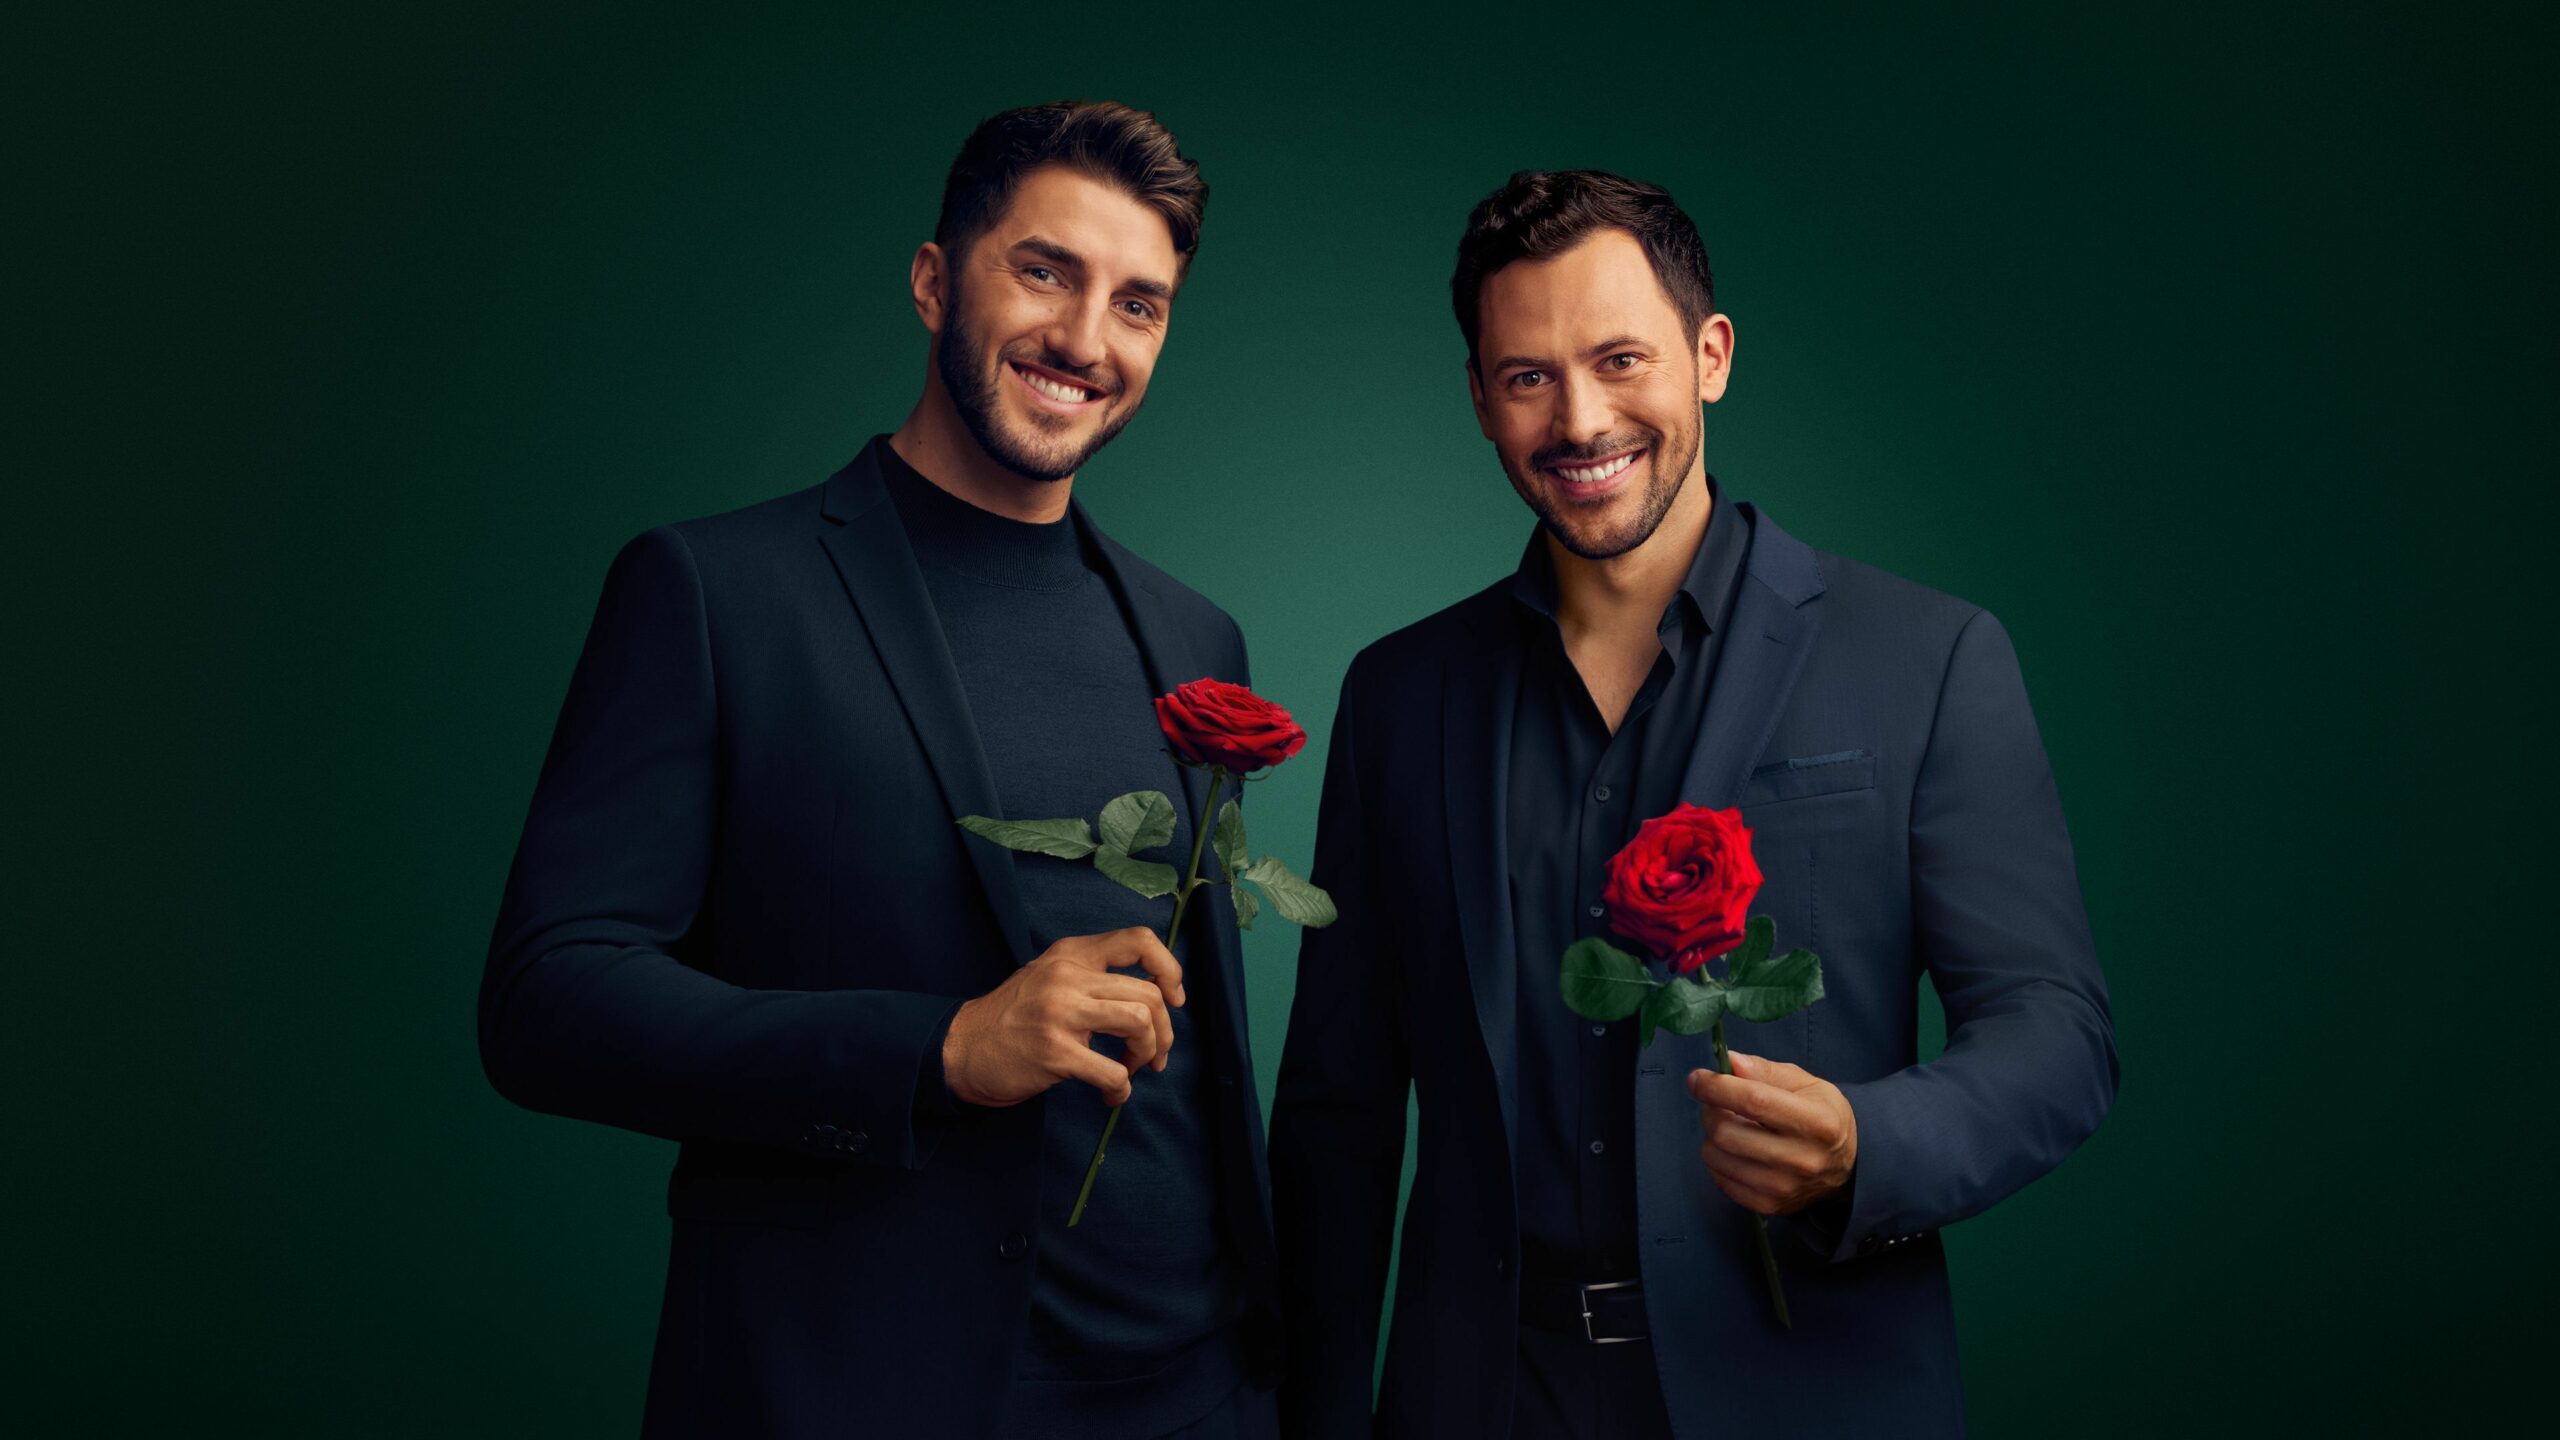 Dennis (l.) und Sebastian (r.), die Teilnehmer der RTL-Kuppelshow „Die Bachelors“. Sie lachen und halten jeweils eine rote Rose in einer Hand.